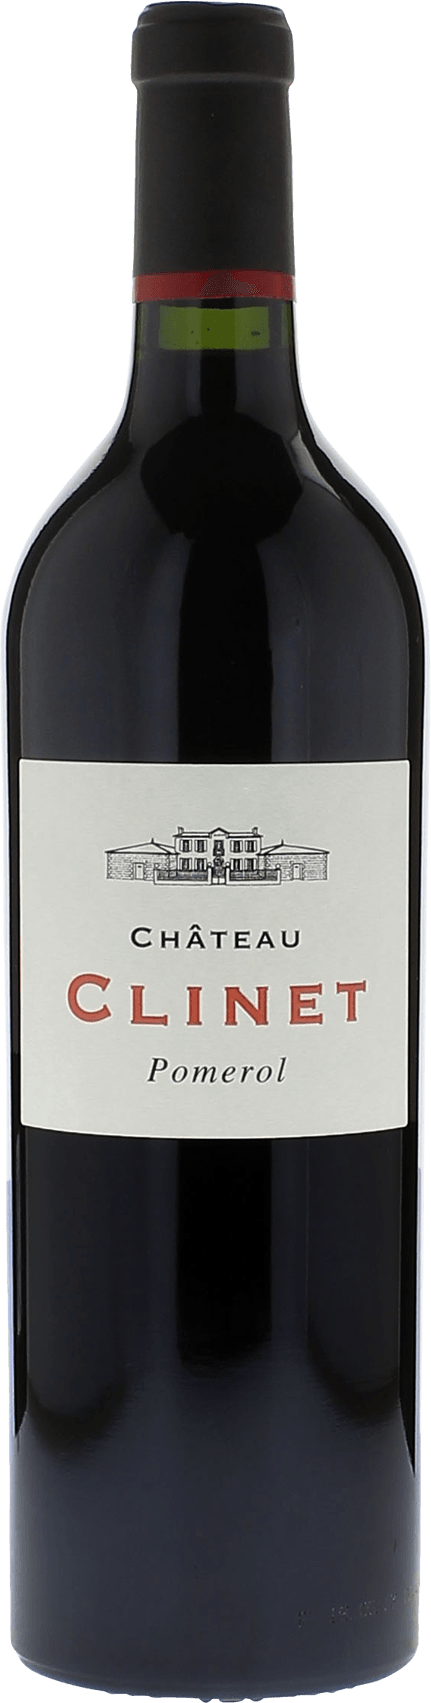 Clinet 1961  Pomerol, Bordeaux rouge